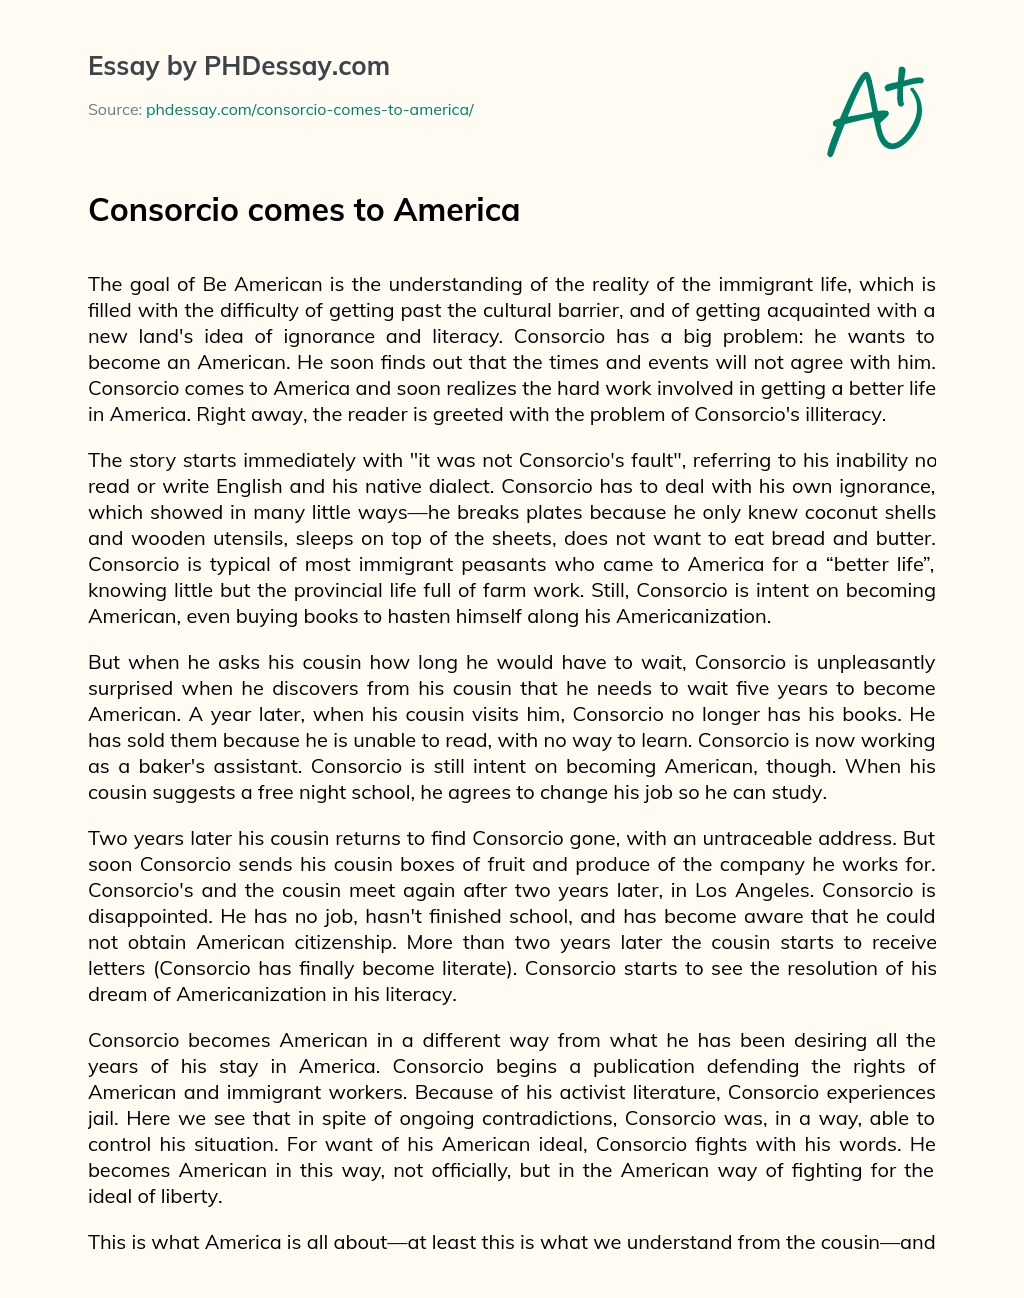 Consorcio comes to America essay